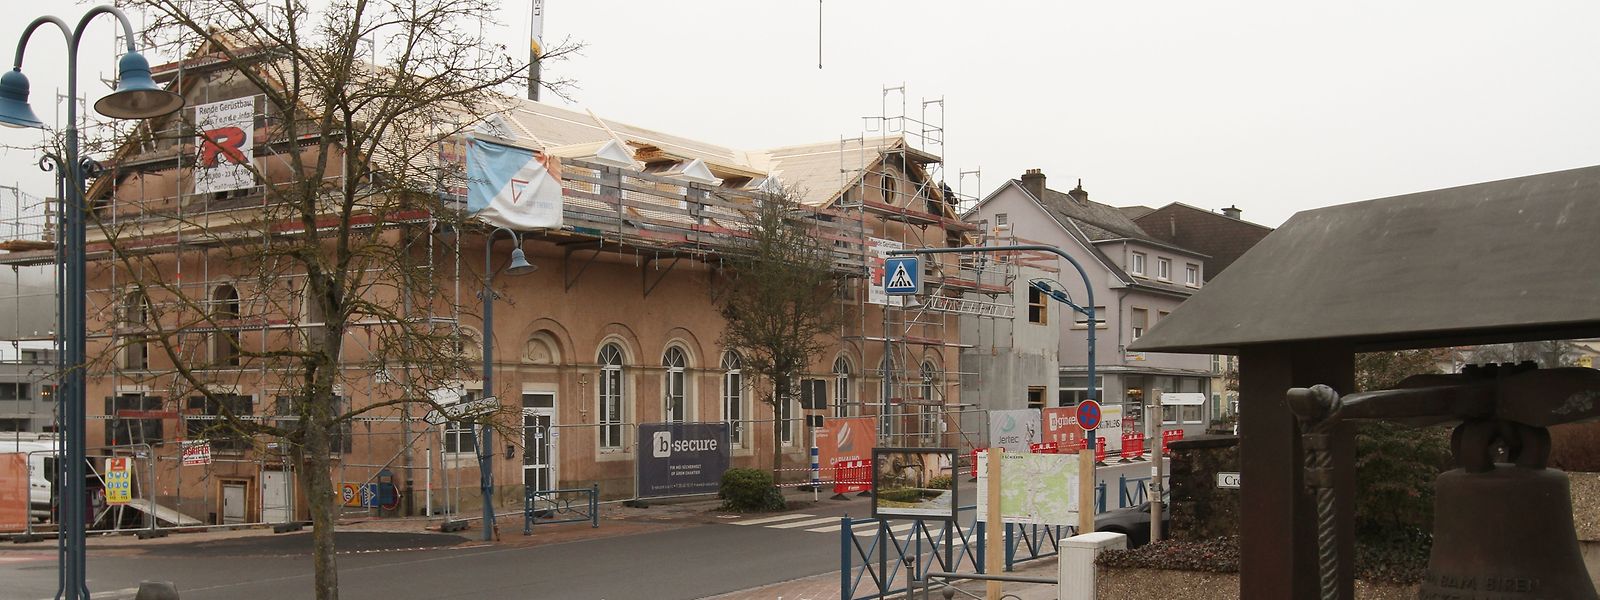 Vier Millionen Euro werden in diesem Jahr in den Umbau der alten Schule in ein modernes Kulturzentrum investiert.